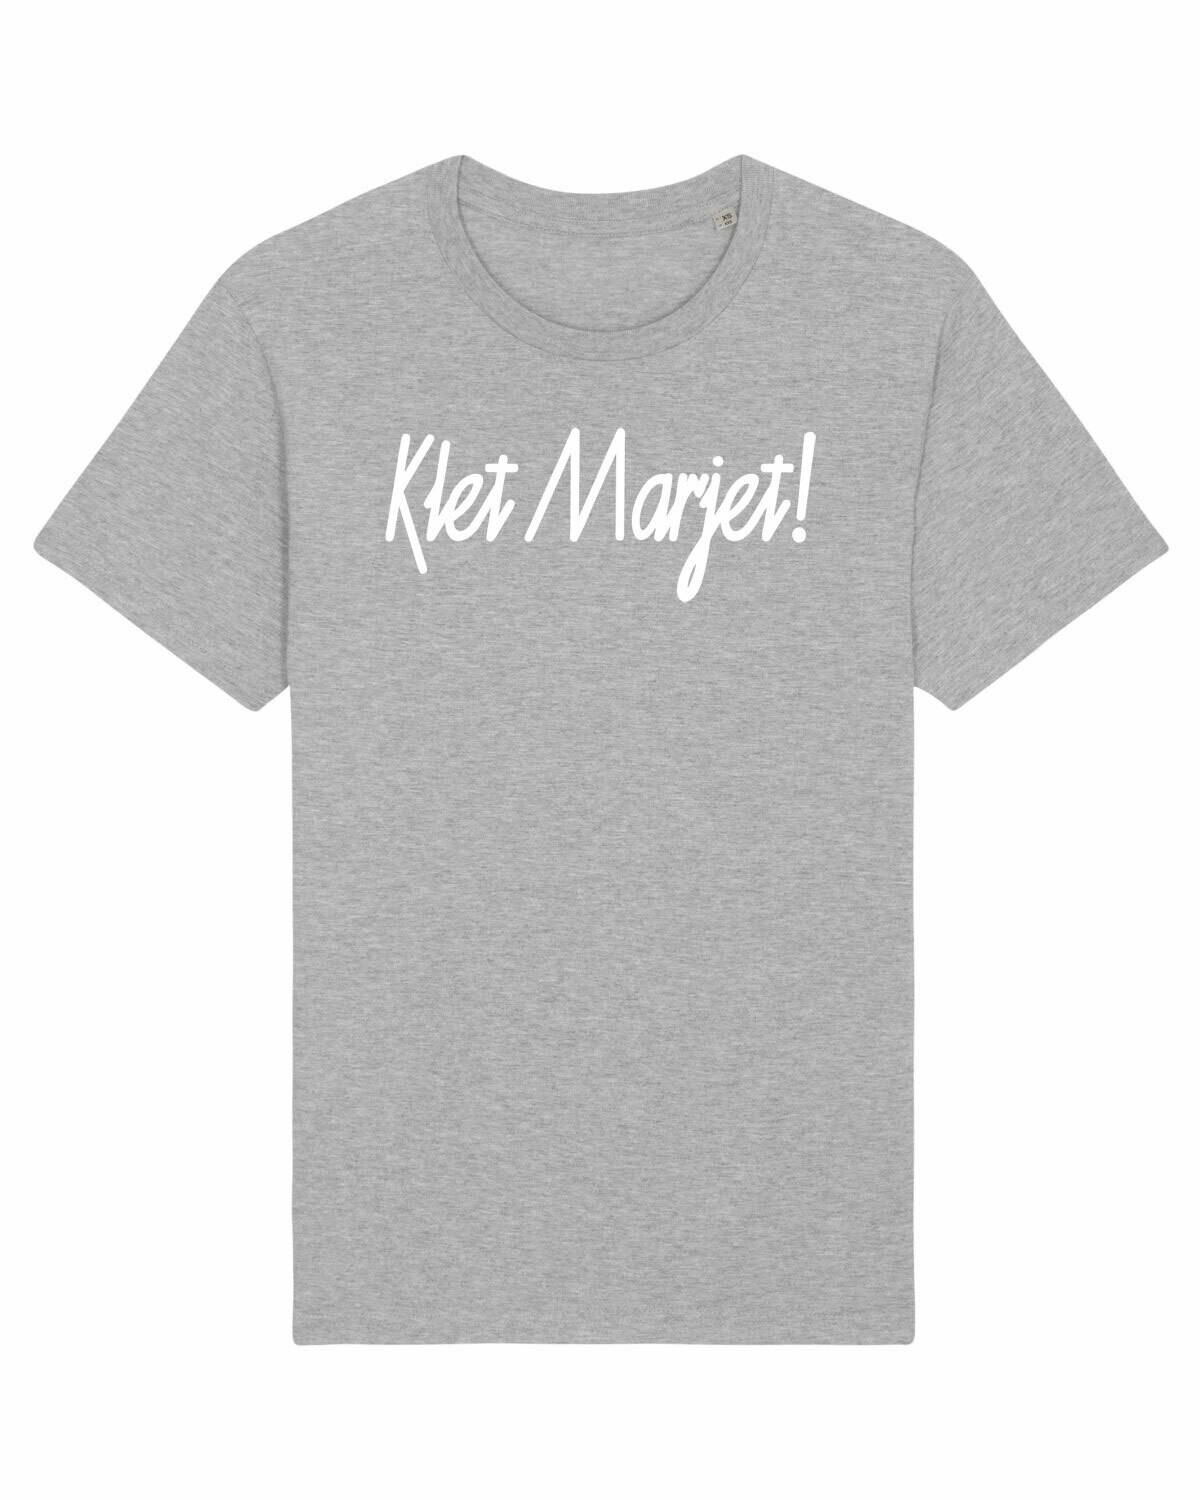 T-shirt Klet Marjet!